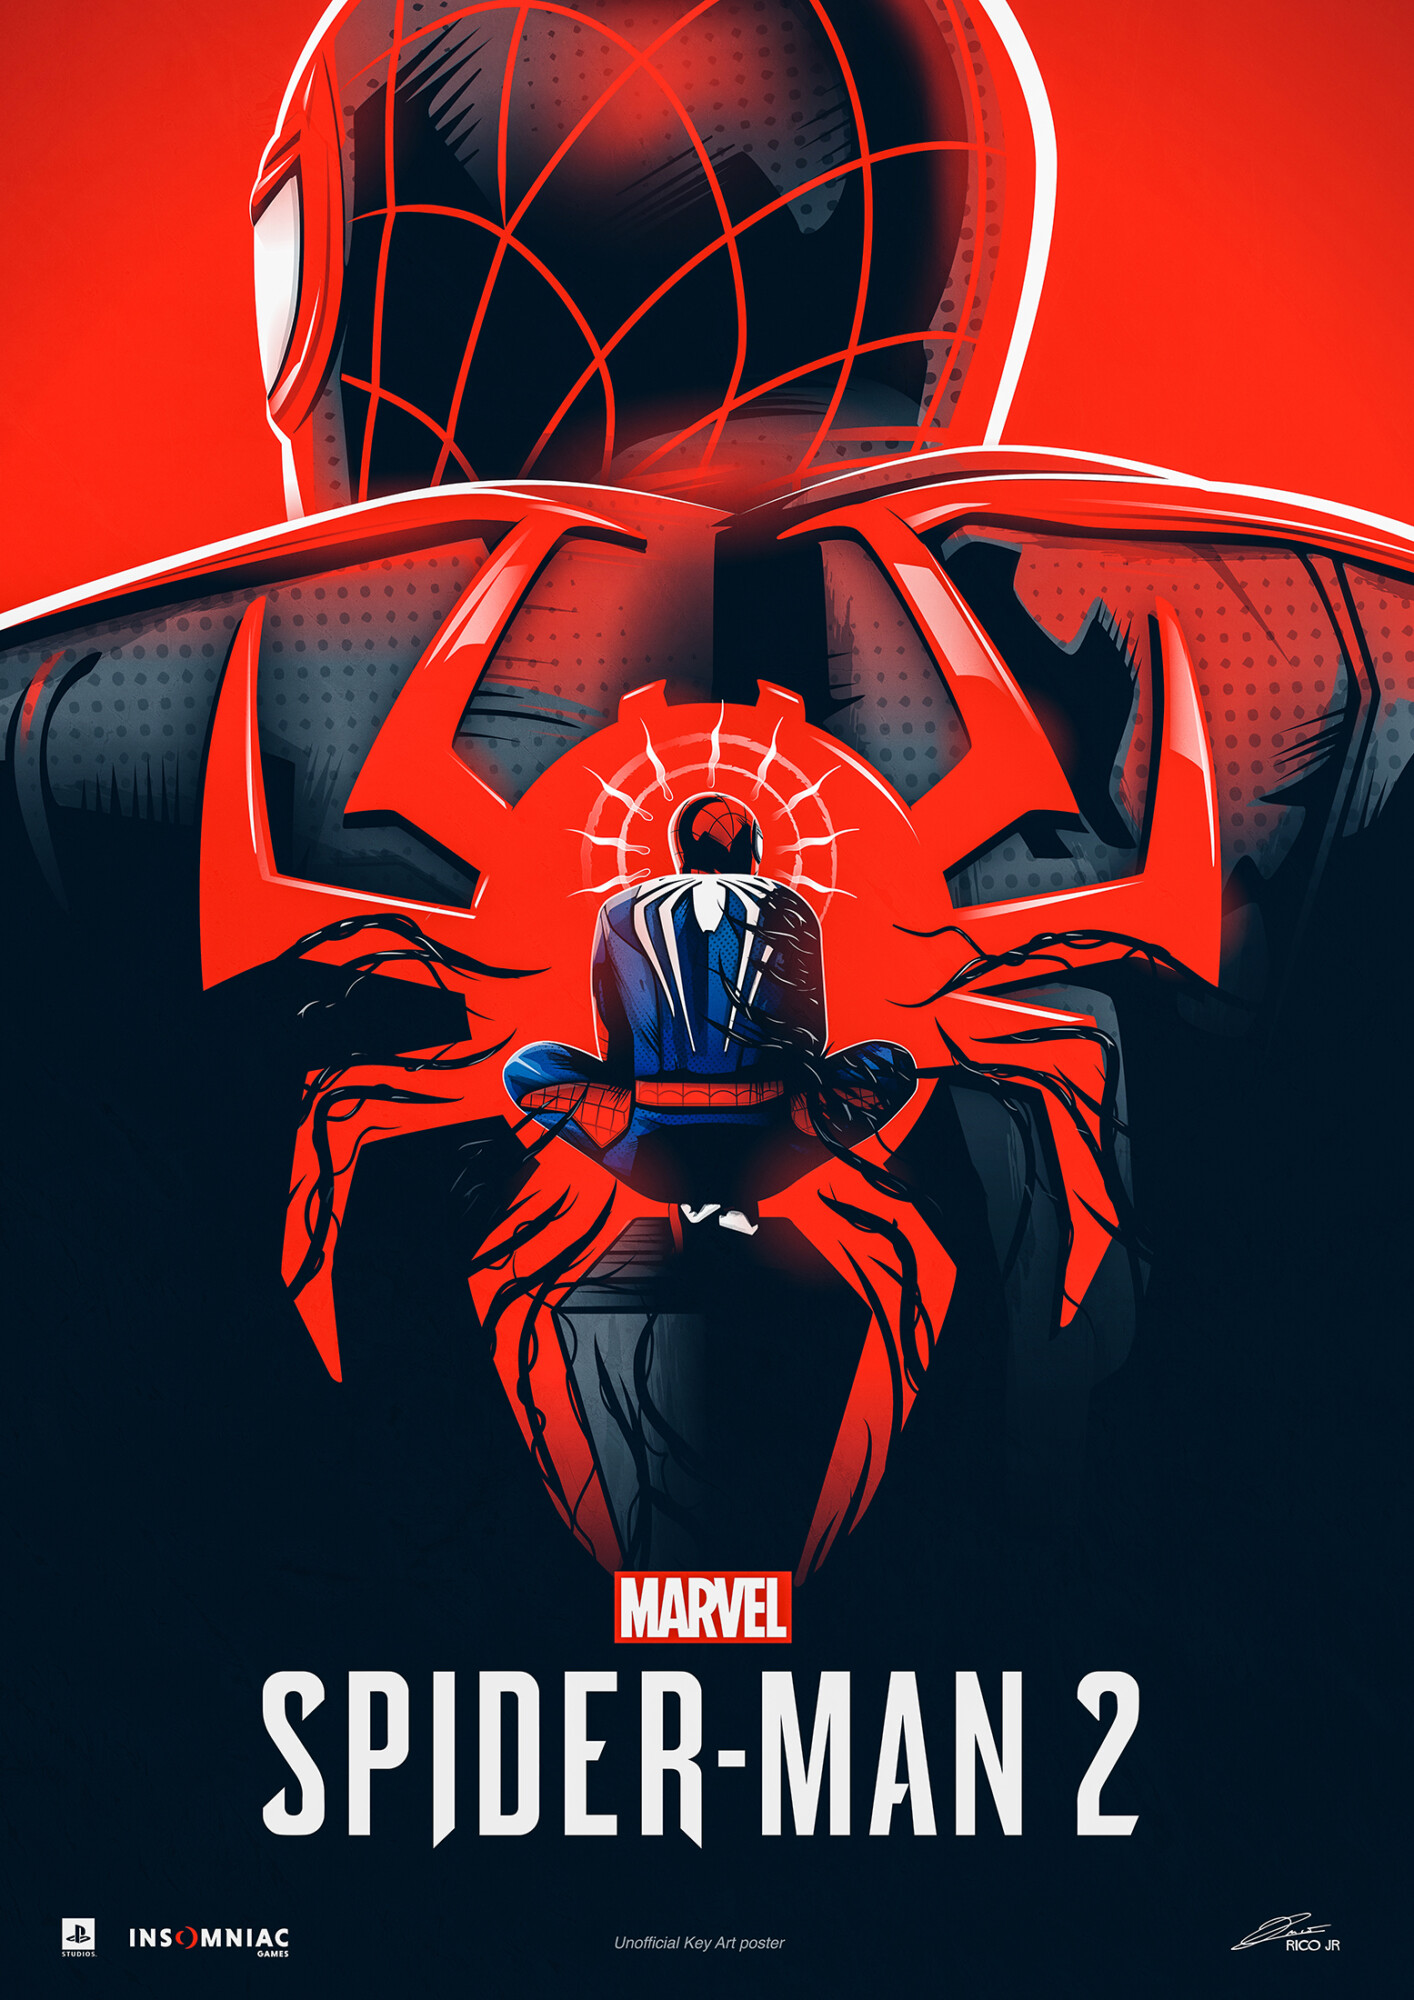 Marvel’s Spider-Man 2 (Game) Poster Art